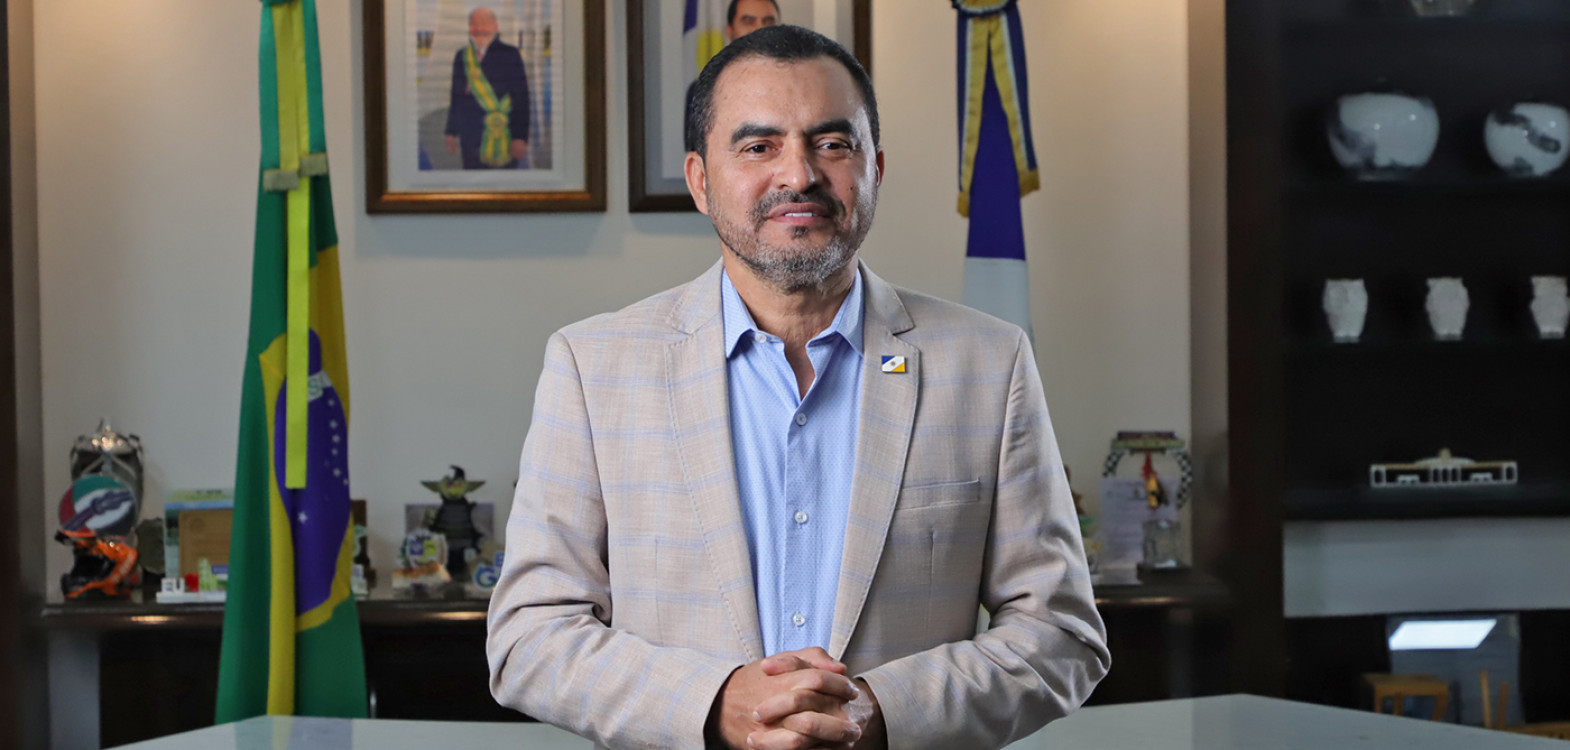 O governador do Tocantins, Wanderlei Barbosa, parabeniza o distrito de Taquaruçu por sediar mais uma edição do Capital por um dia, realizada neste sábado, 1° de junho
